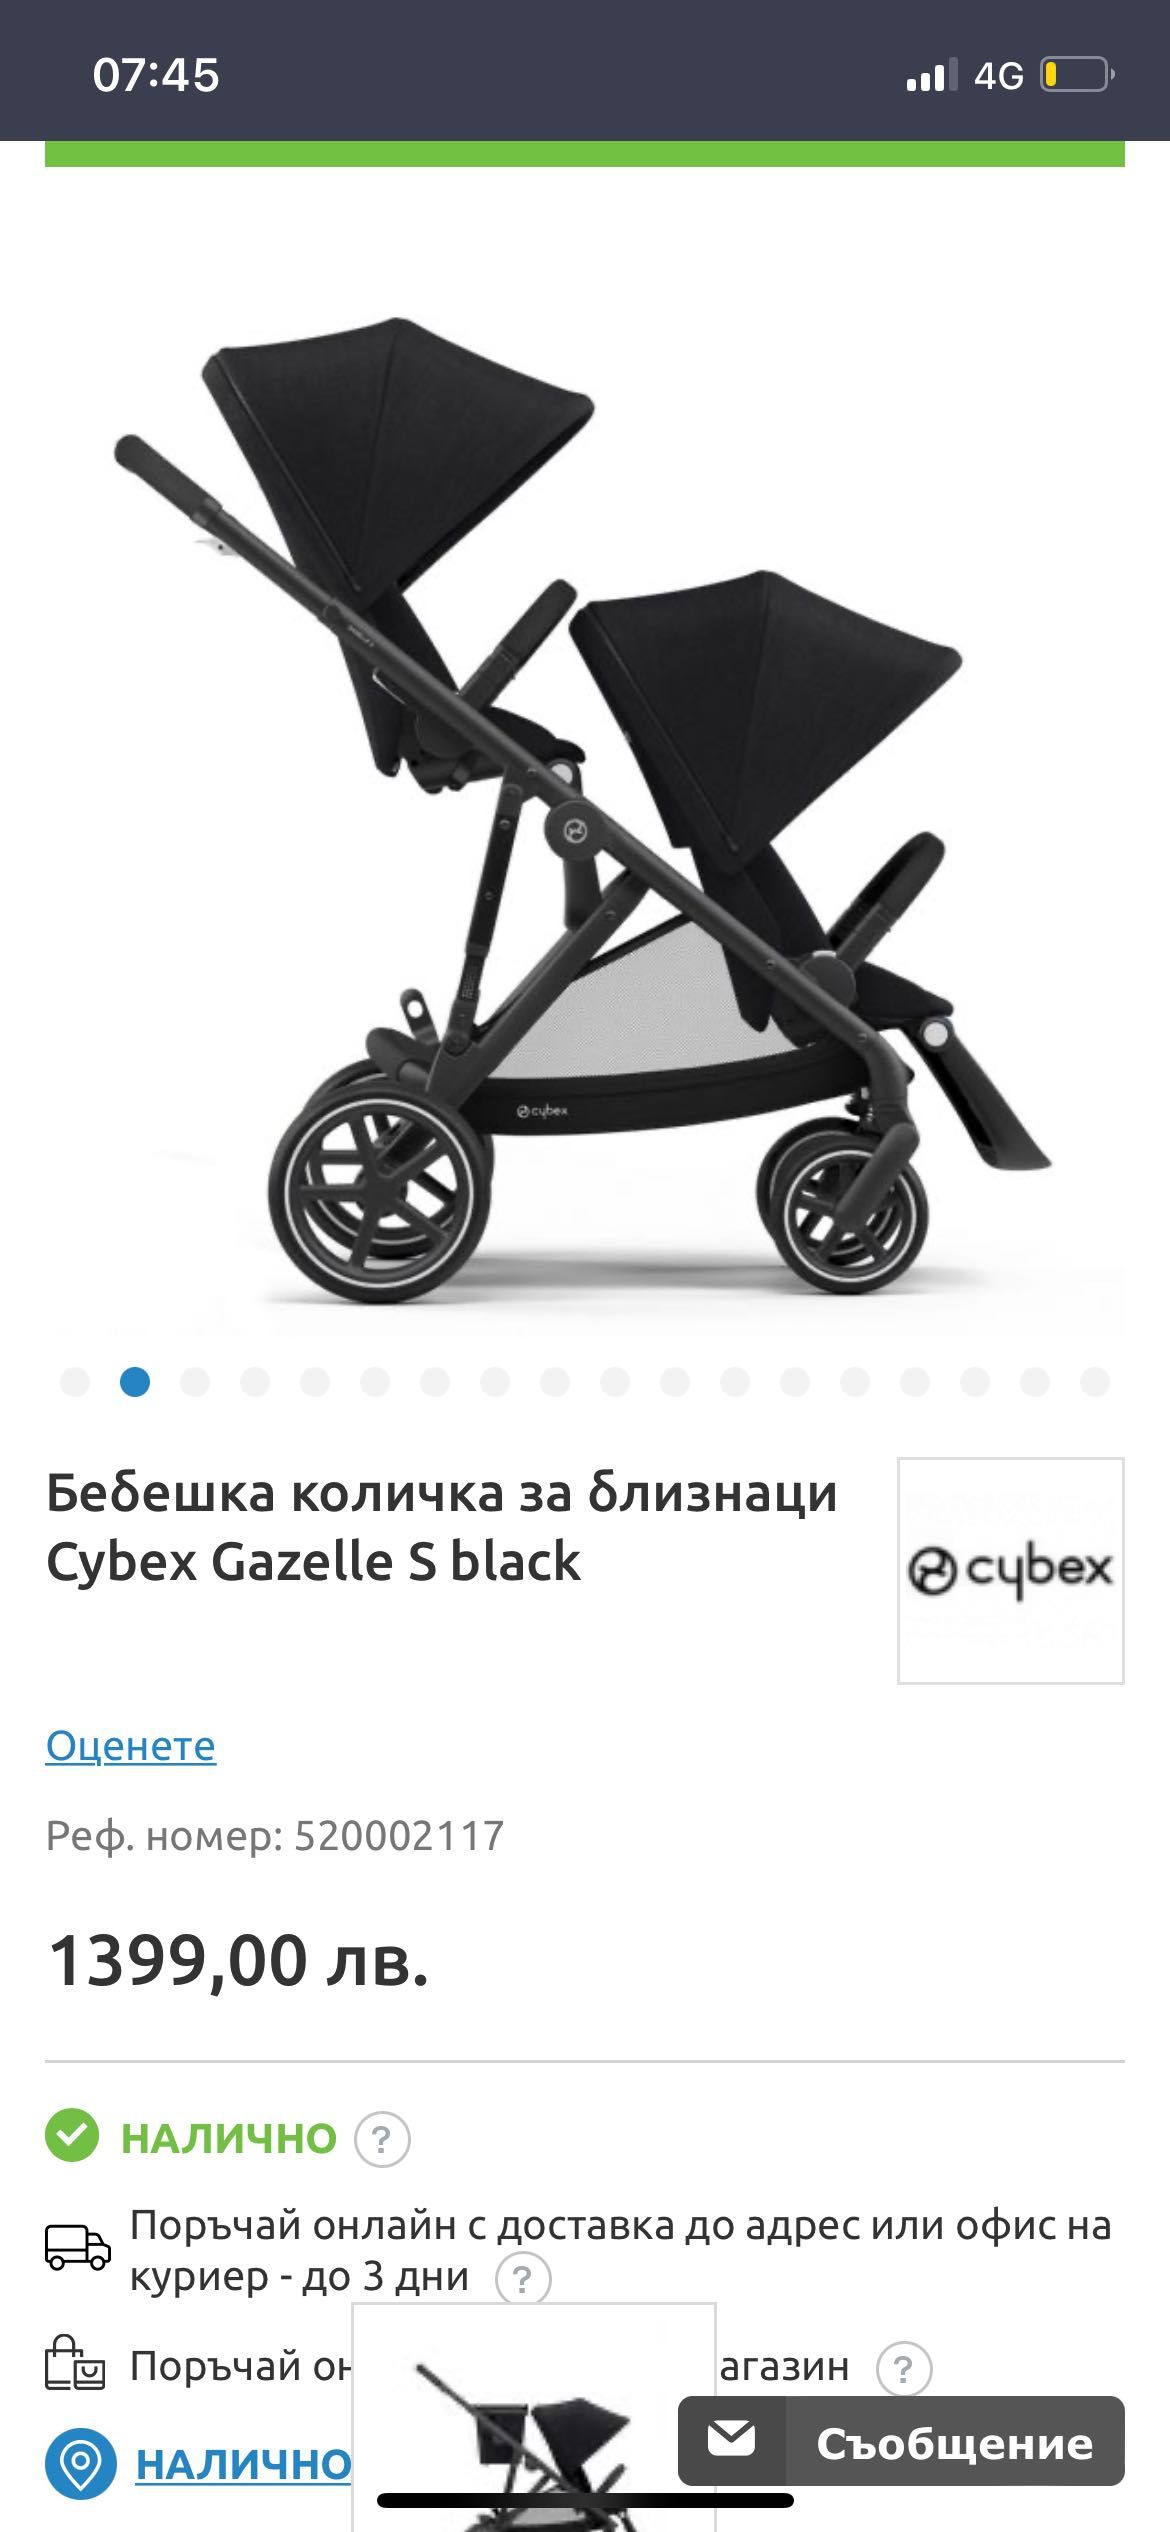 Количка Cybex Gazelle S черна - само за София